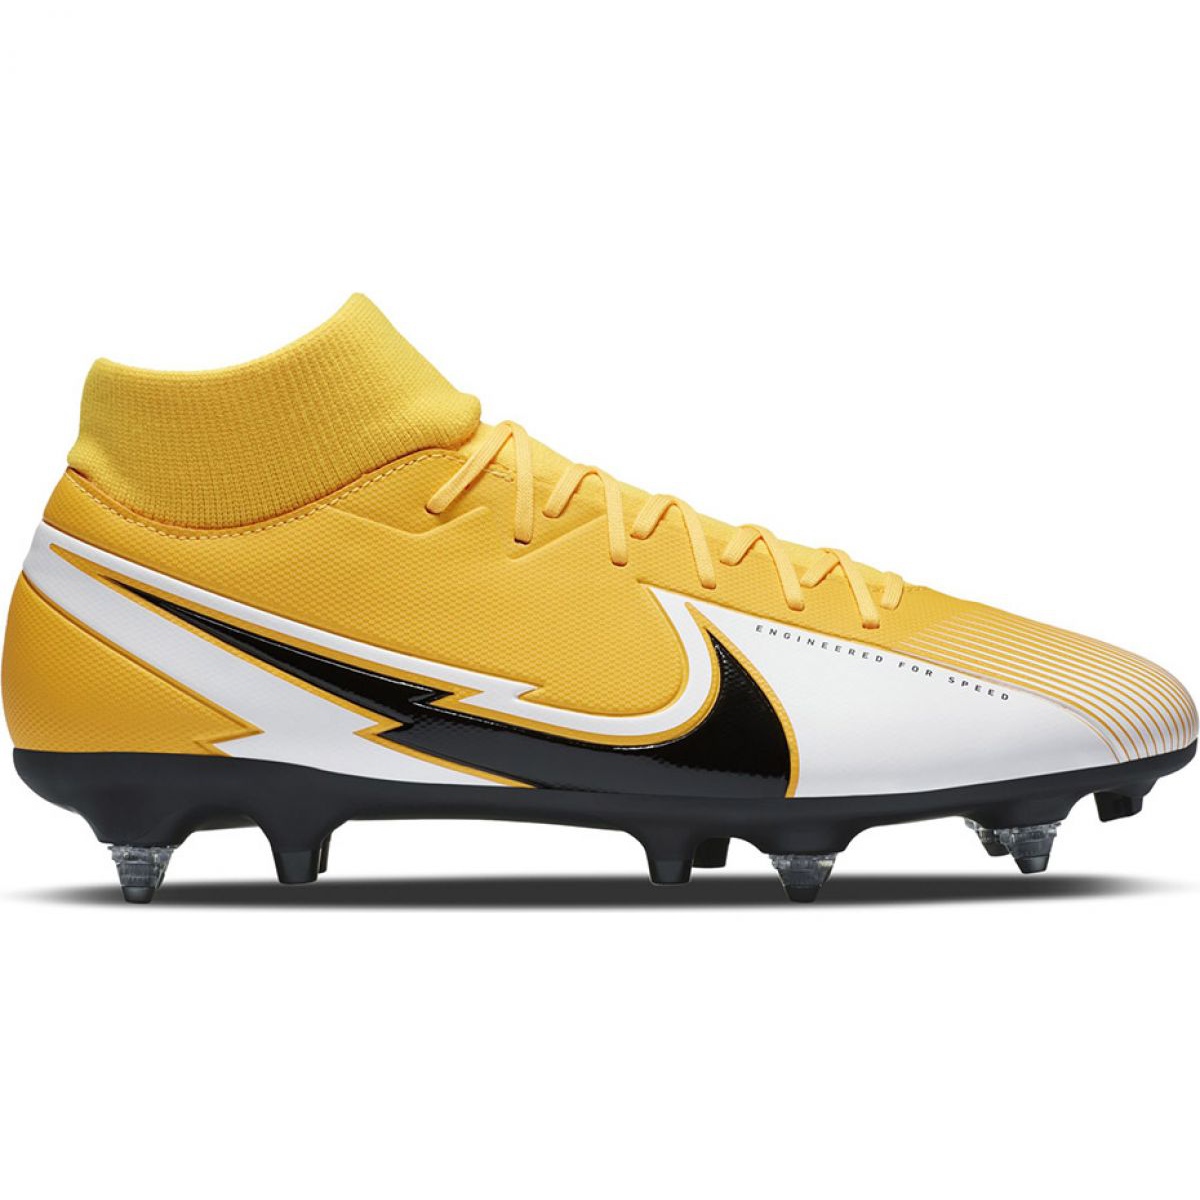 Buty piłkarskie Nike Mercurial Superfly 7 Academy Sg Pro Ac M BQ9141 801 wielokolorowe żółte